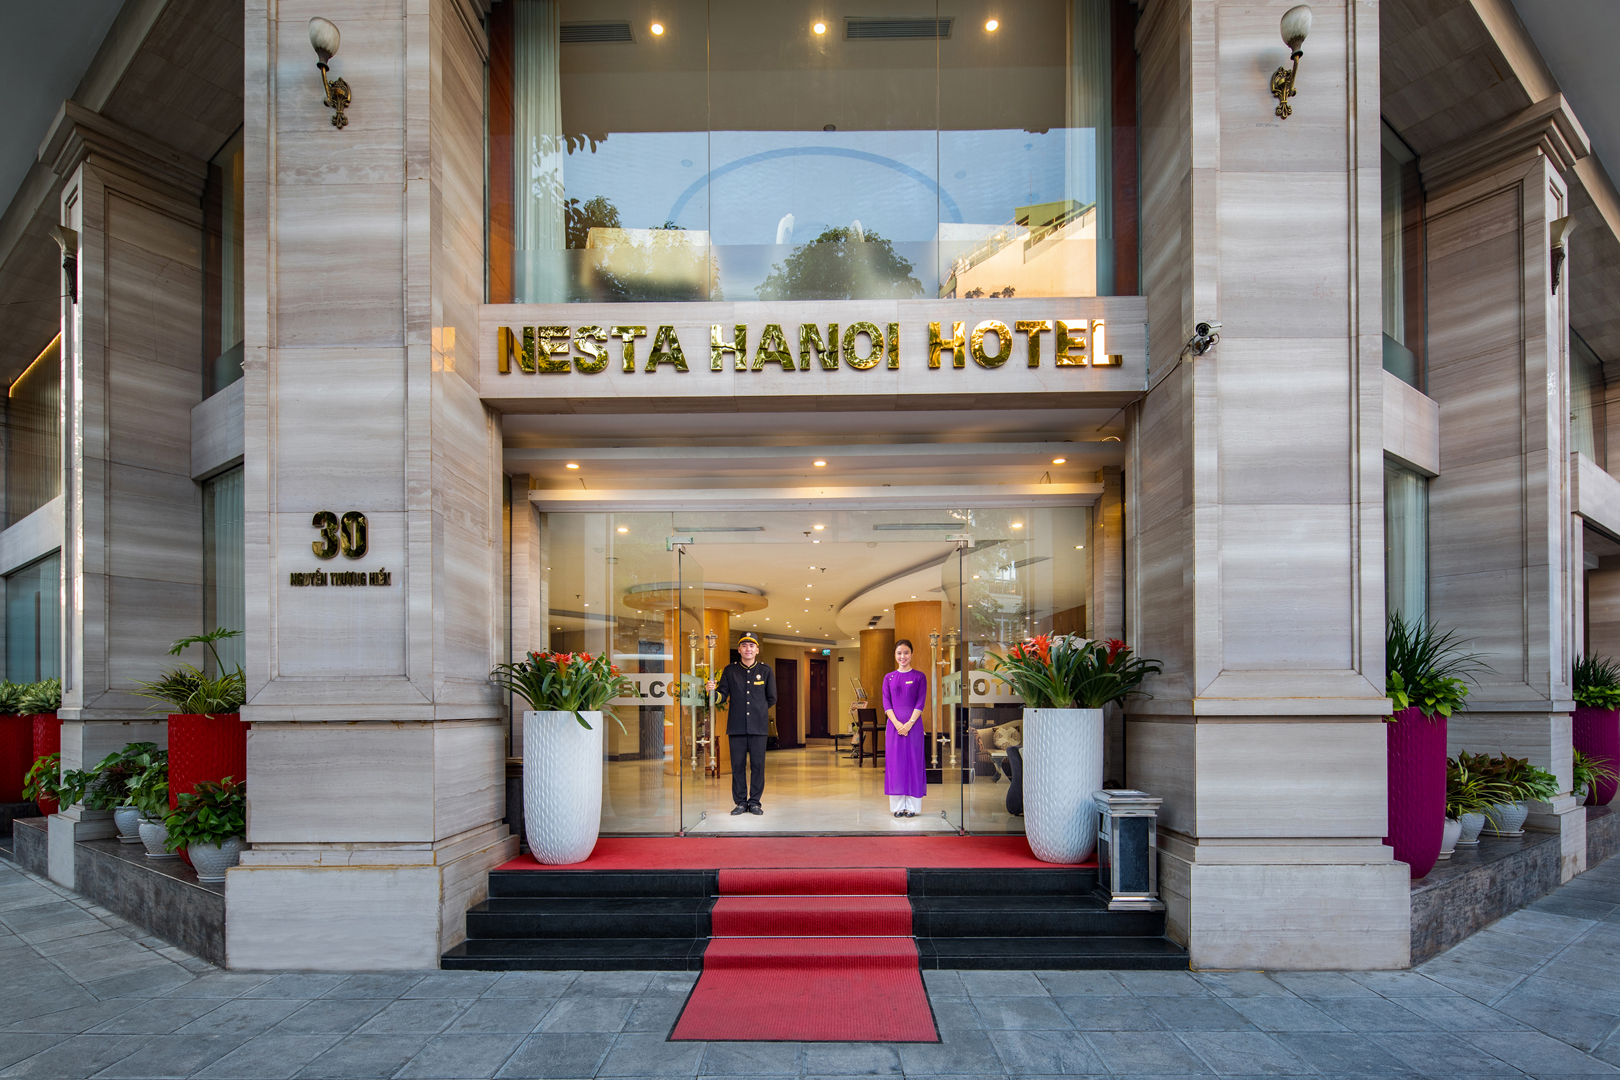 Nesta Hanoi Hotel - 30 Nguyen Thuong Hien, Hanoi